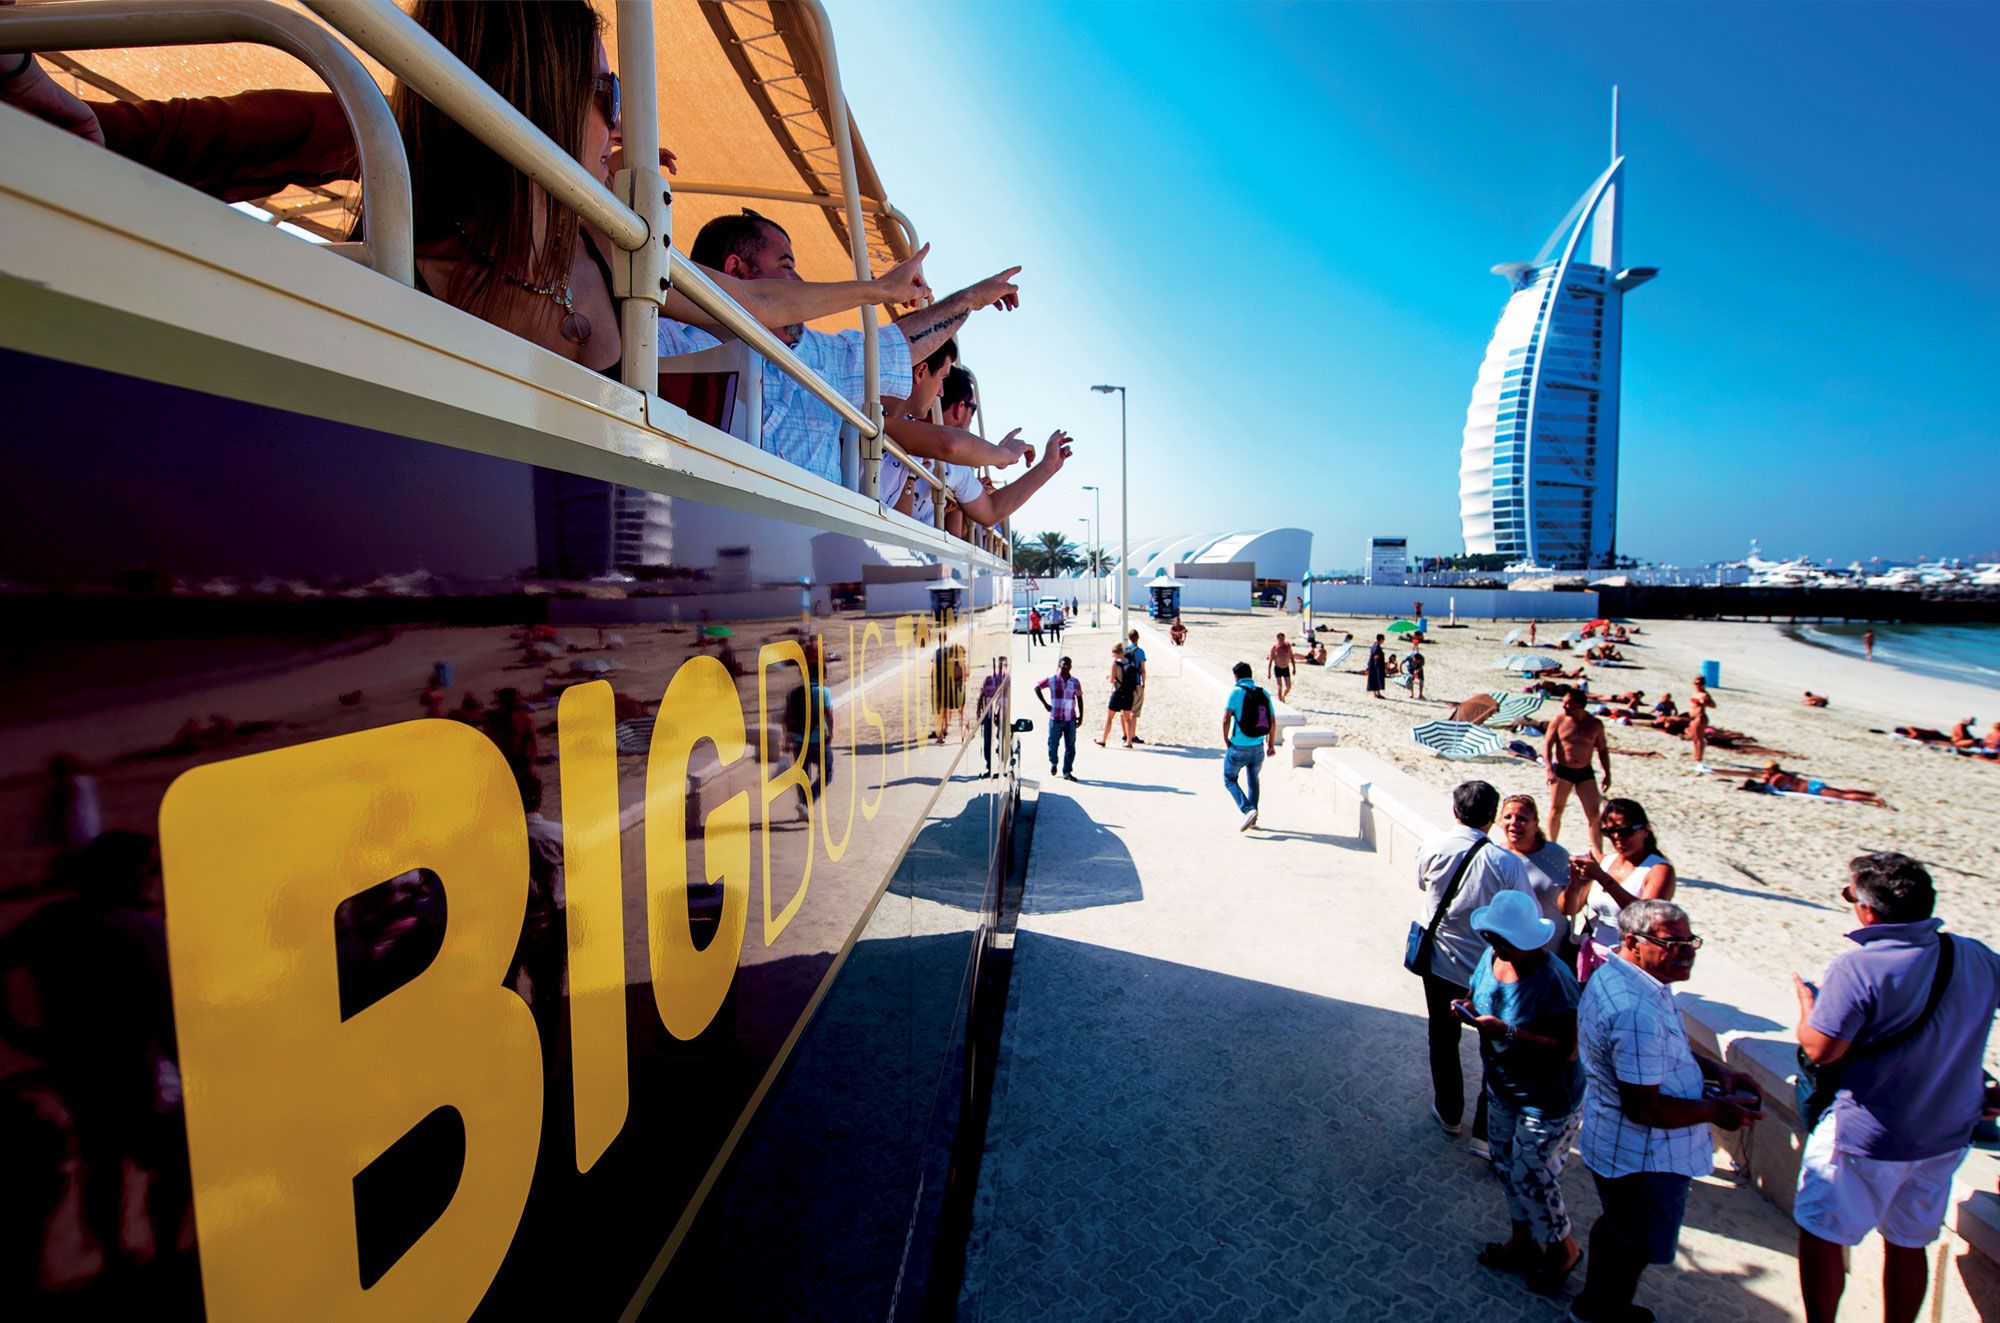 Big Bus in Dubai driving towards Burj Khalifa